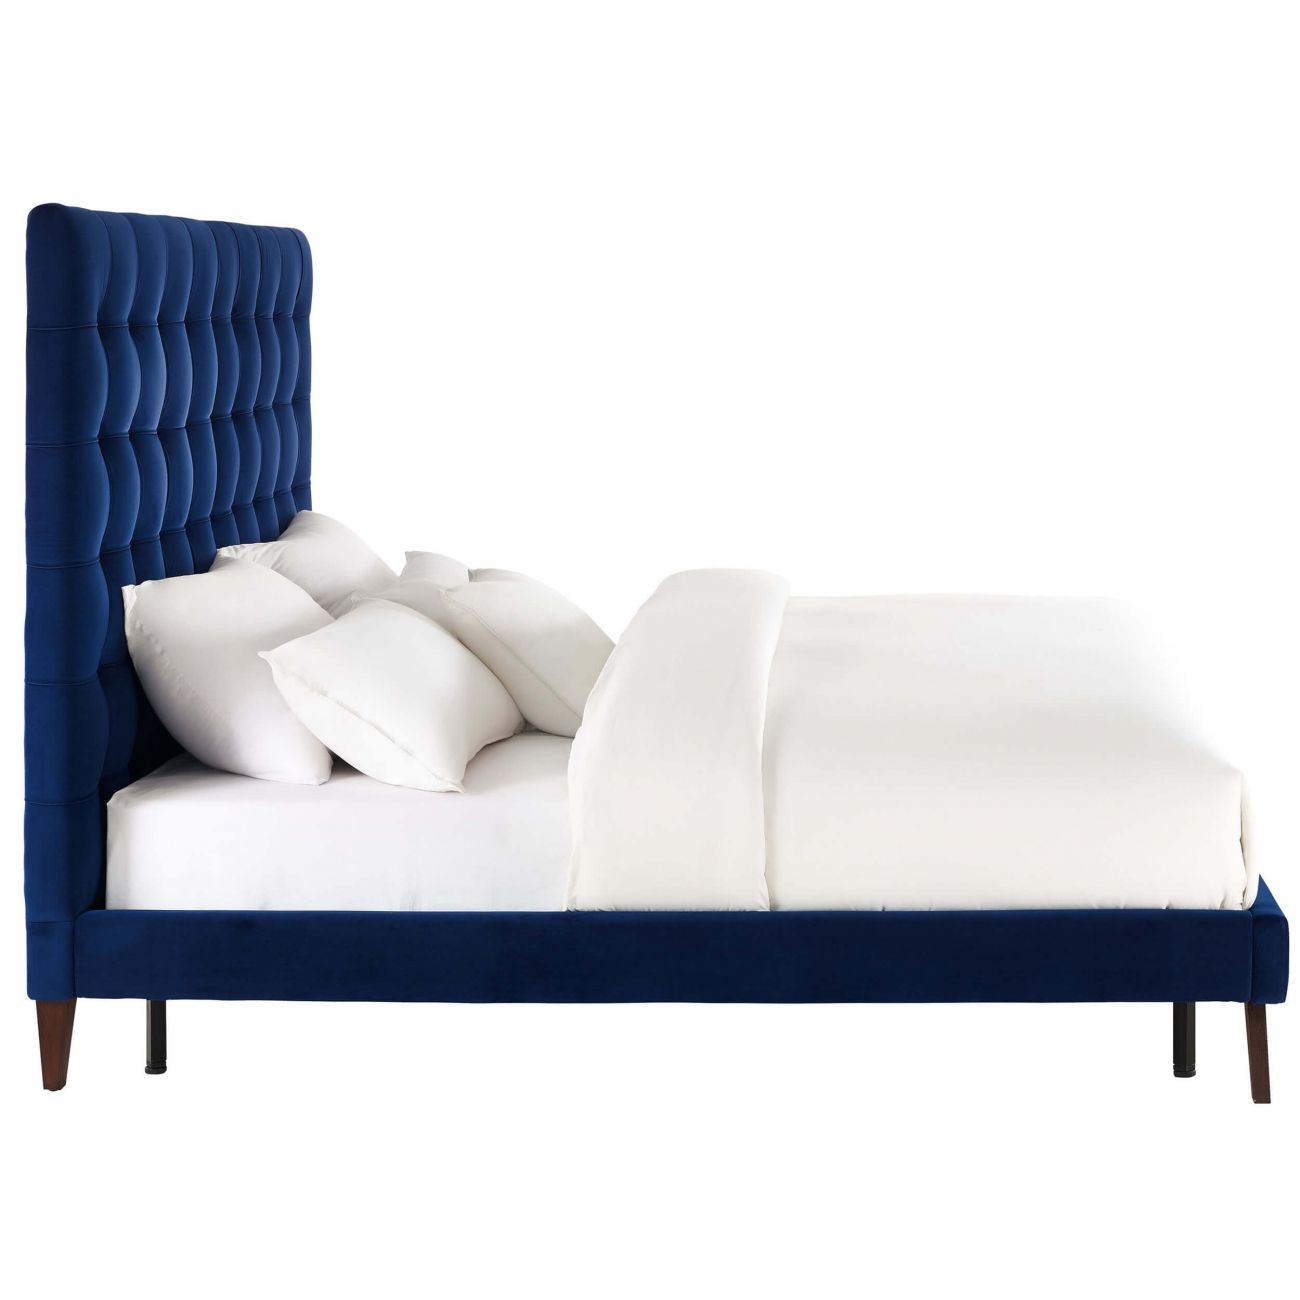 Кровать двуспальная 160х200 синяя из велюра Eden